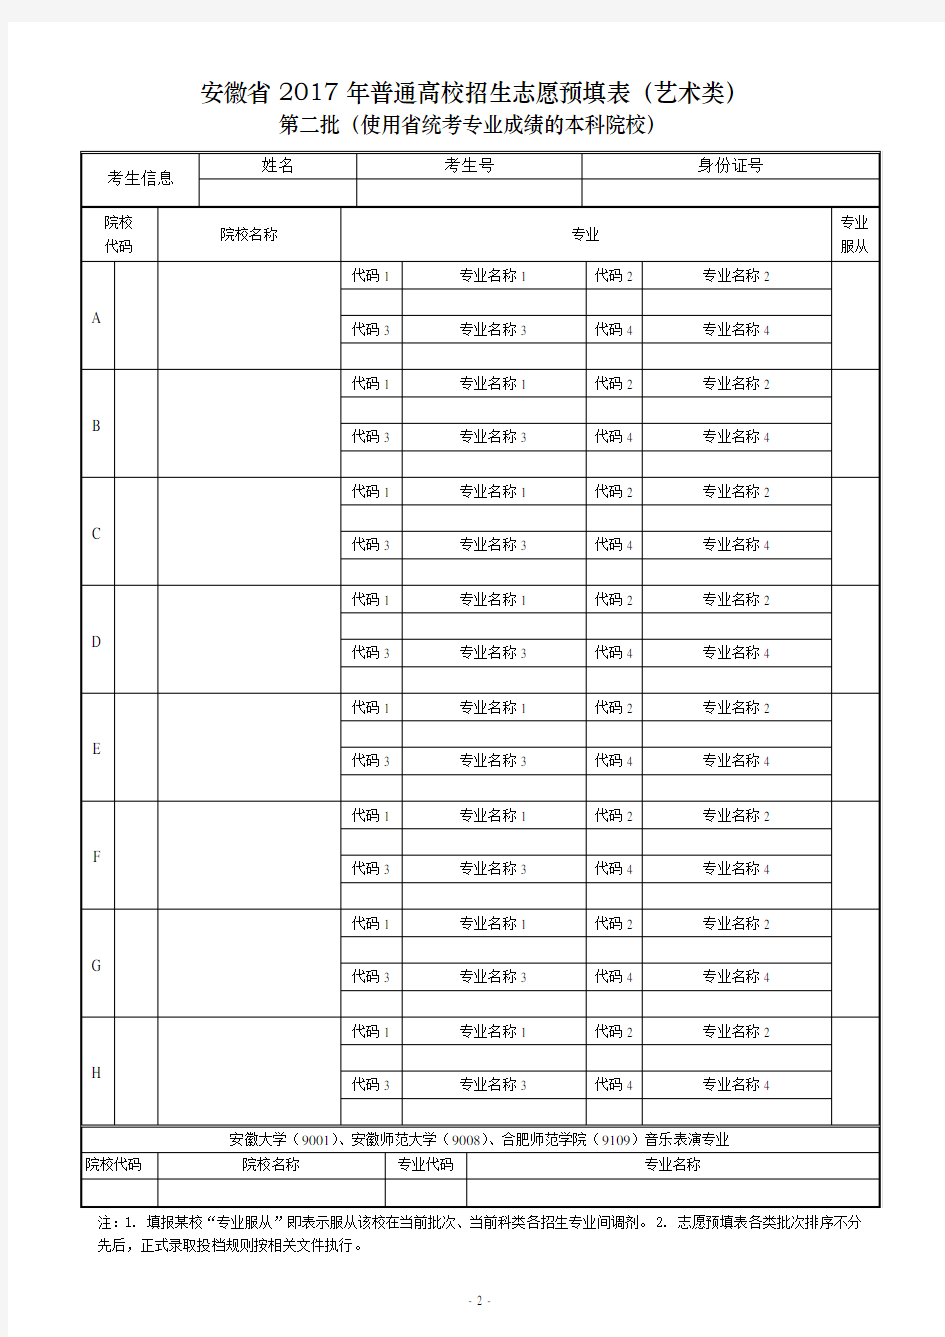 2017年安徽省高考志愿预填表